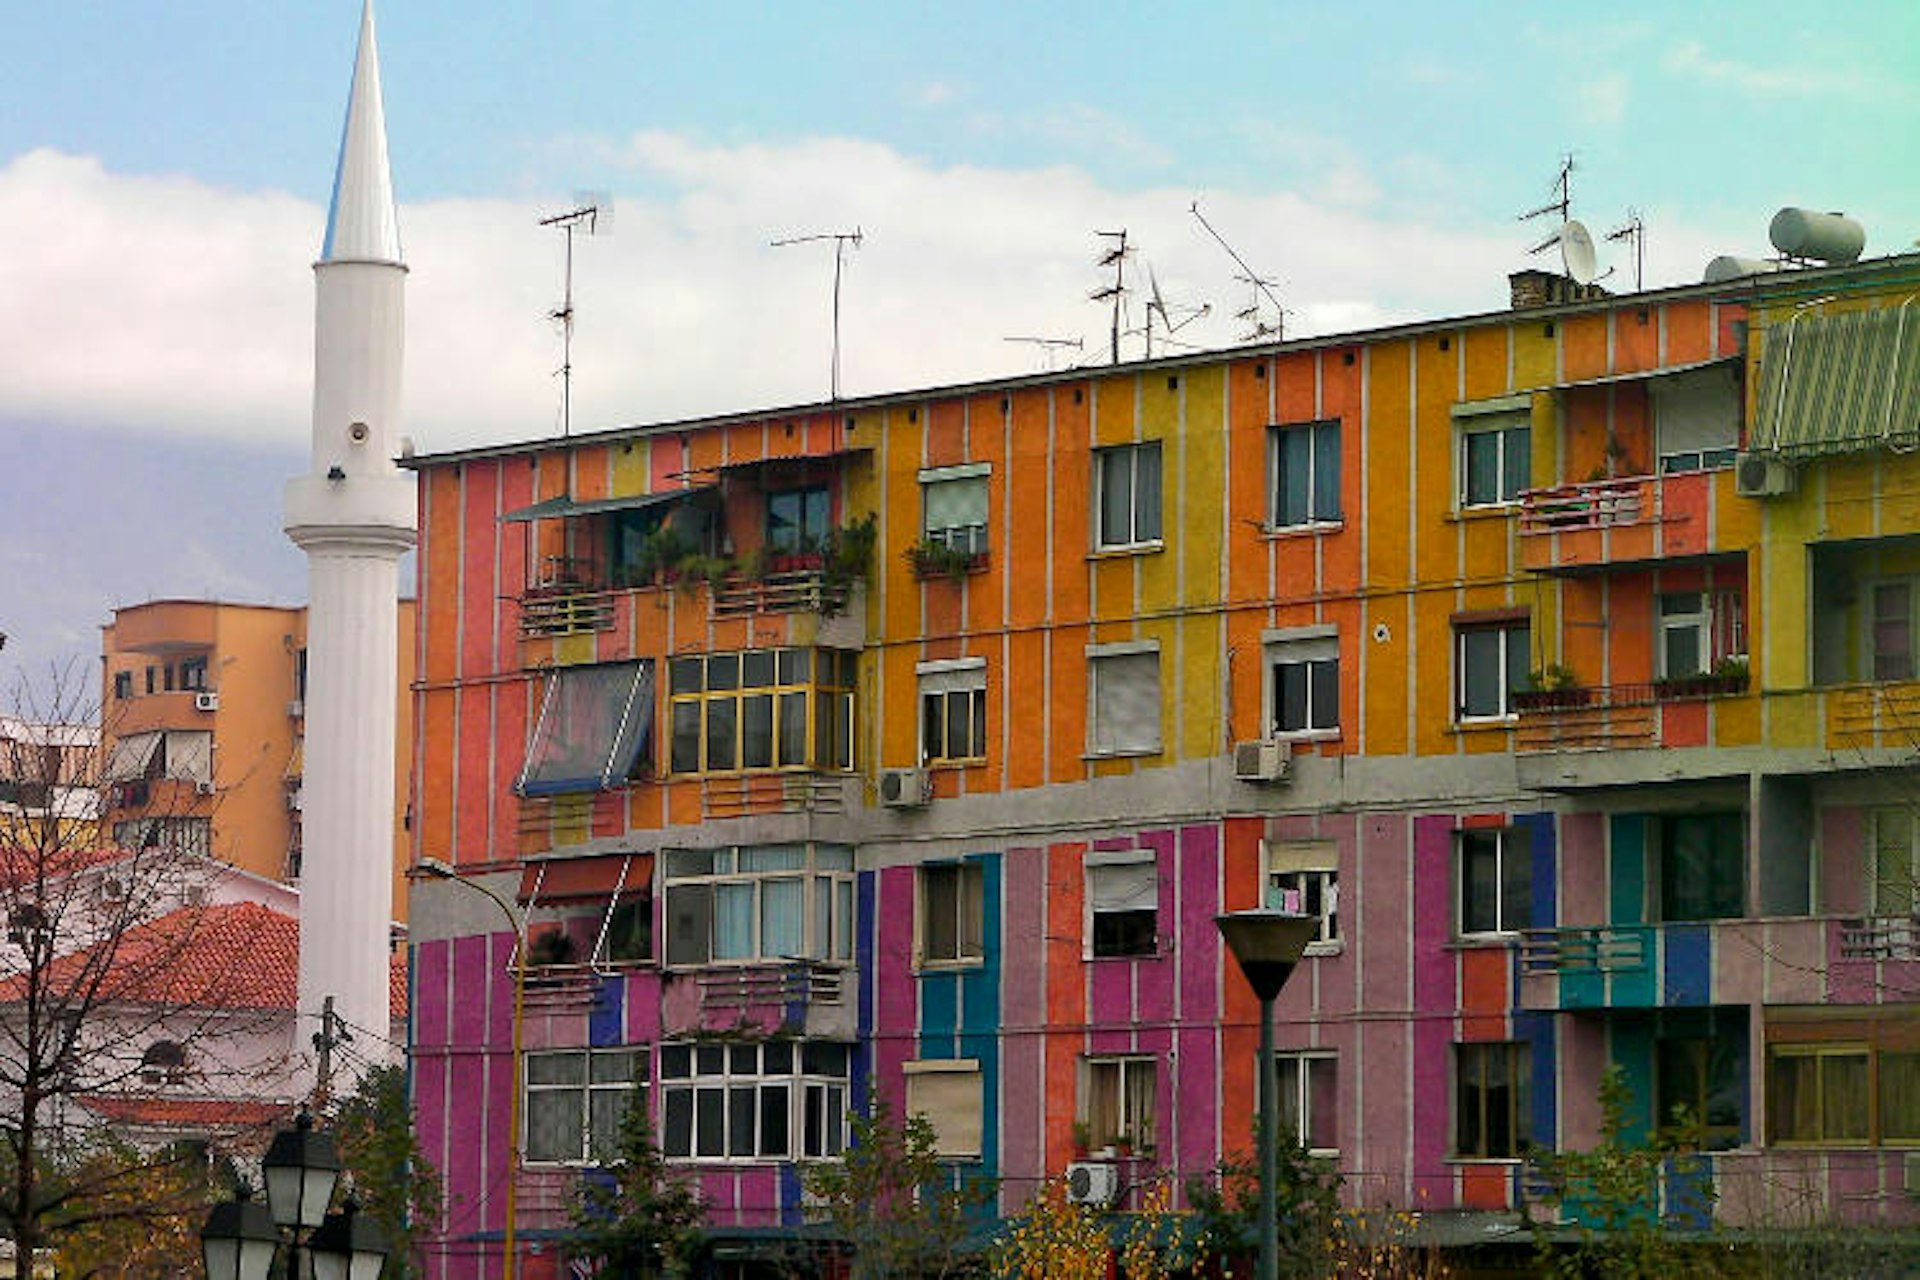 Tirana’s multi-coloured buildings. Image by Tony Bowden / CC BY-SA 2.0